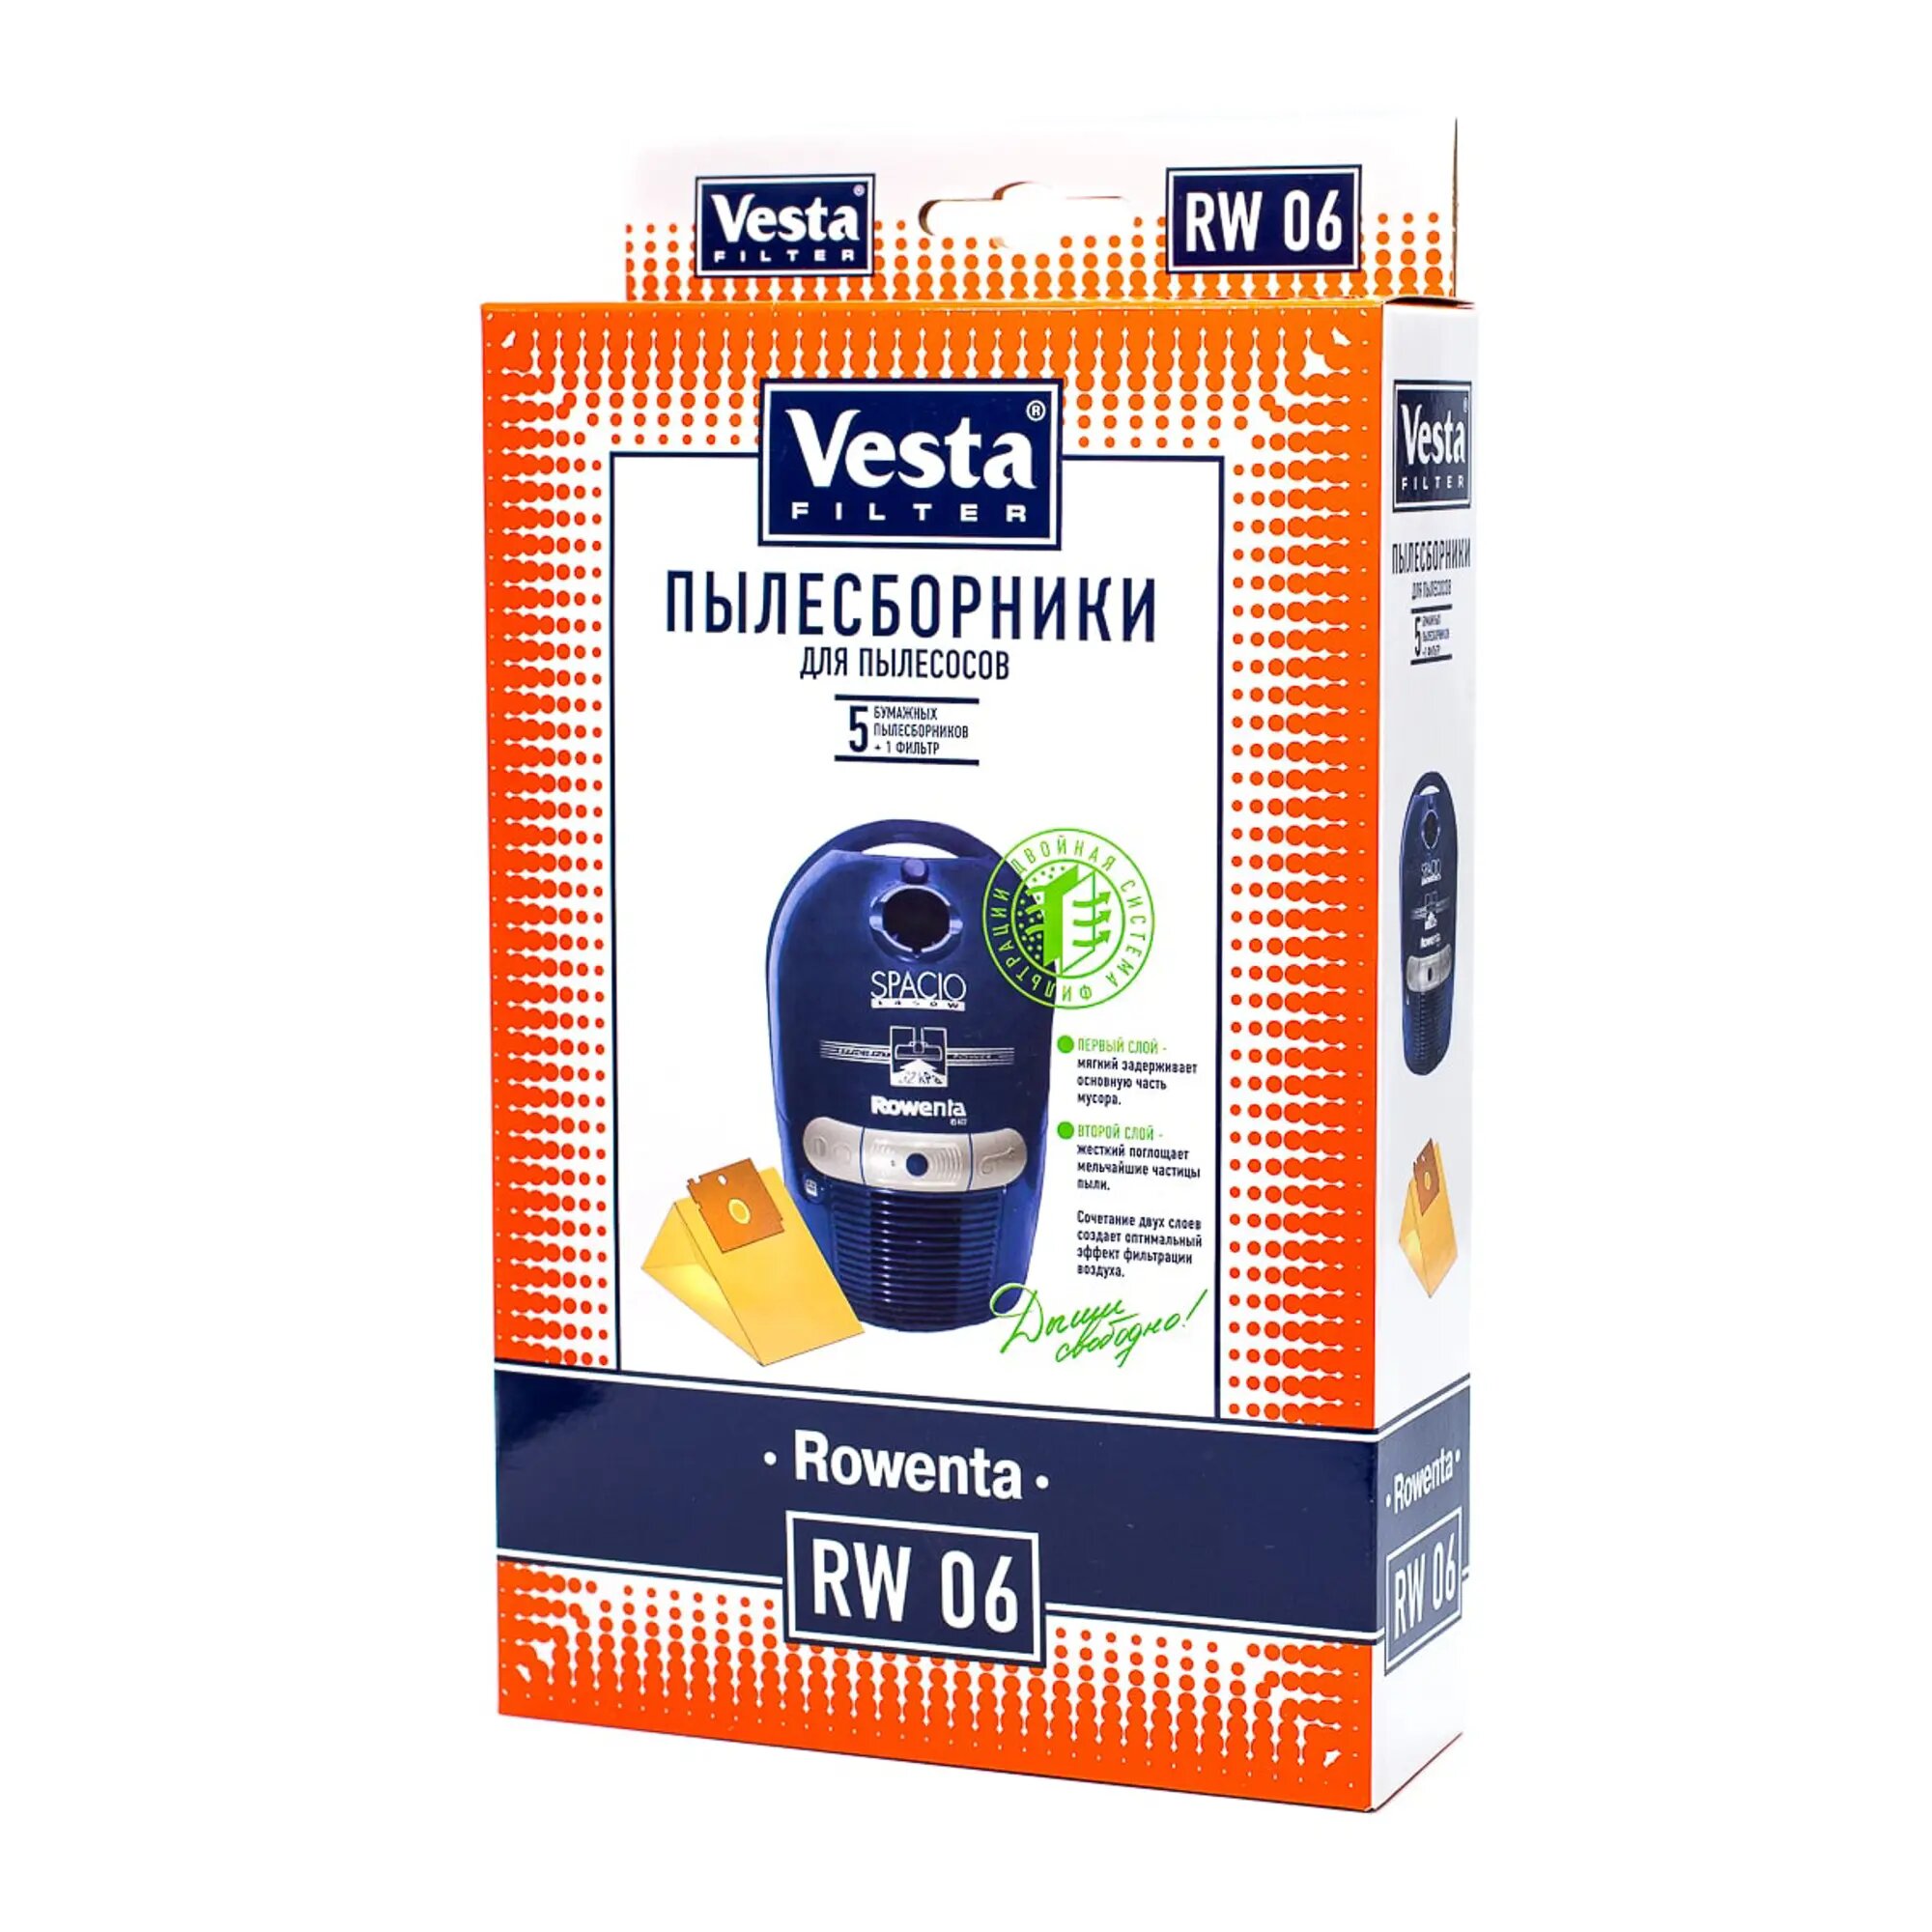 Vesta filter Бумажные пылесборники RW 06, 5 шт. - фото №8